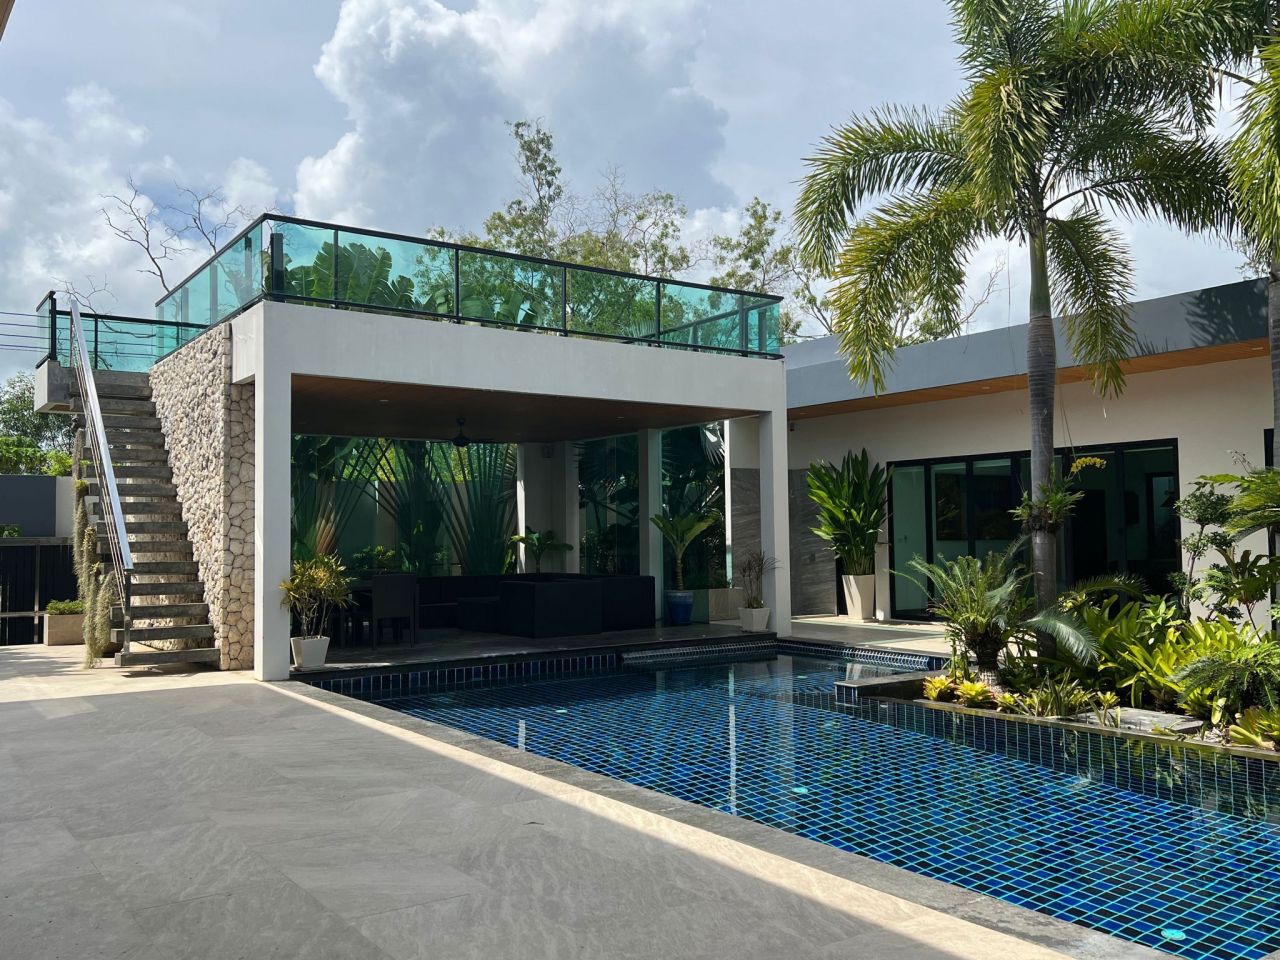 Villa in Insel Phuket, Thailand, 643 m2 - Foto 1